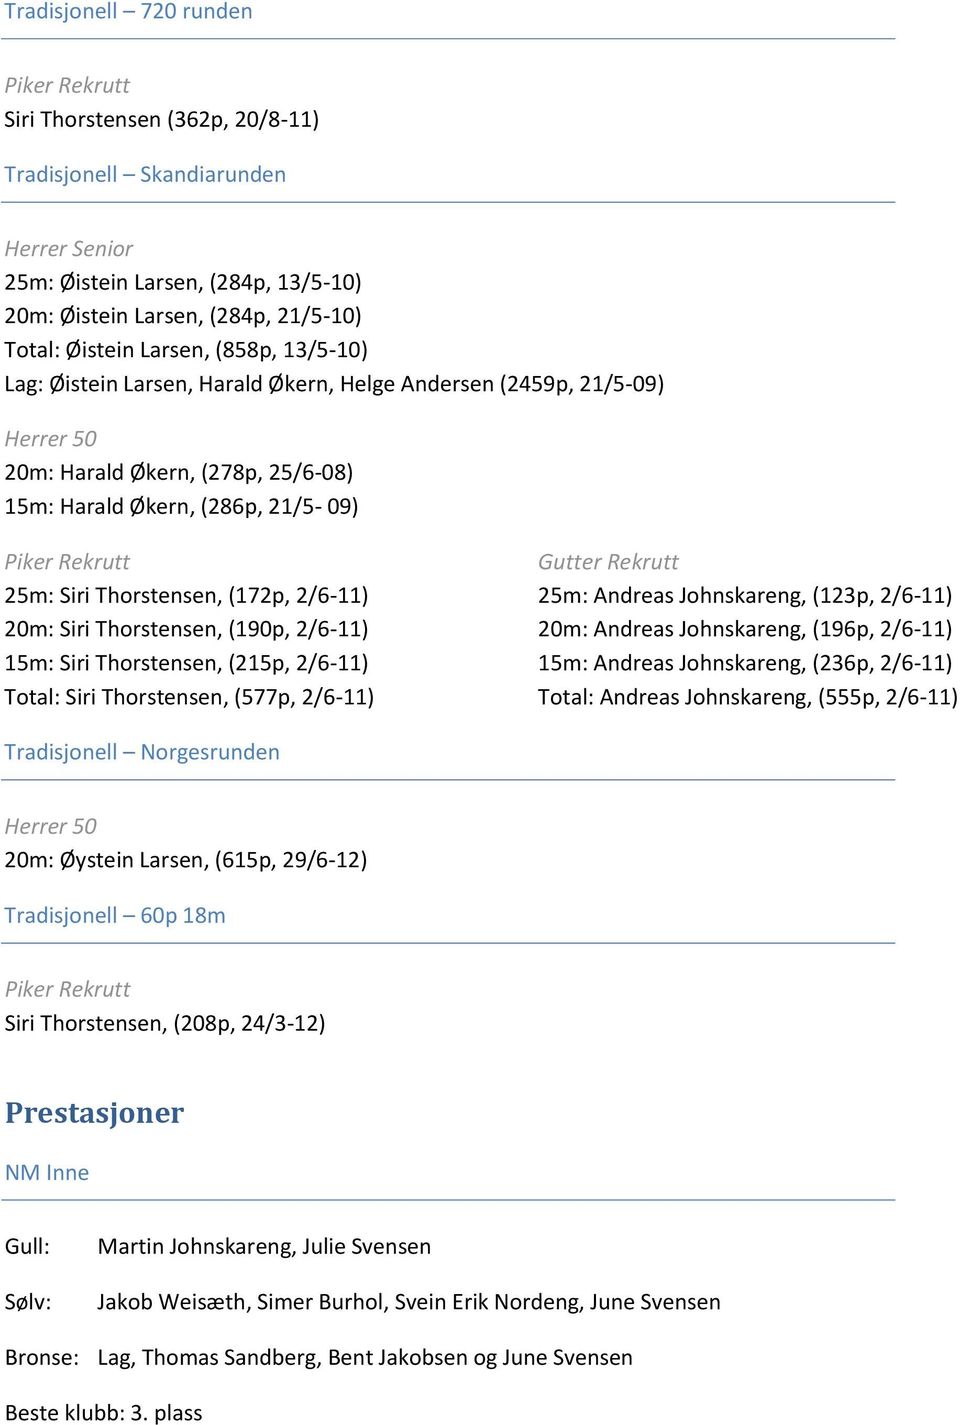 Siri Thorstensen, (172p, 2/6-11) 20m: Siri Thorstensen, (190p, 2/6-11) 15m: Siri Thorstensen, (215p, 2/6-11) Total: Siri Thorstensen, (577p, 2/6-11) Gutter Rekrutt 25m: Andreas Johnskareng, (123p,